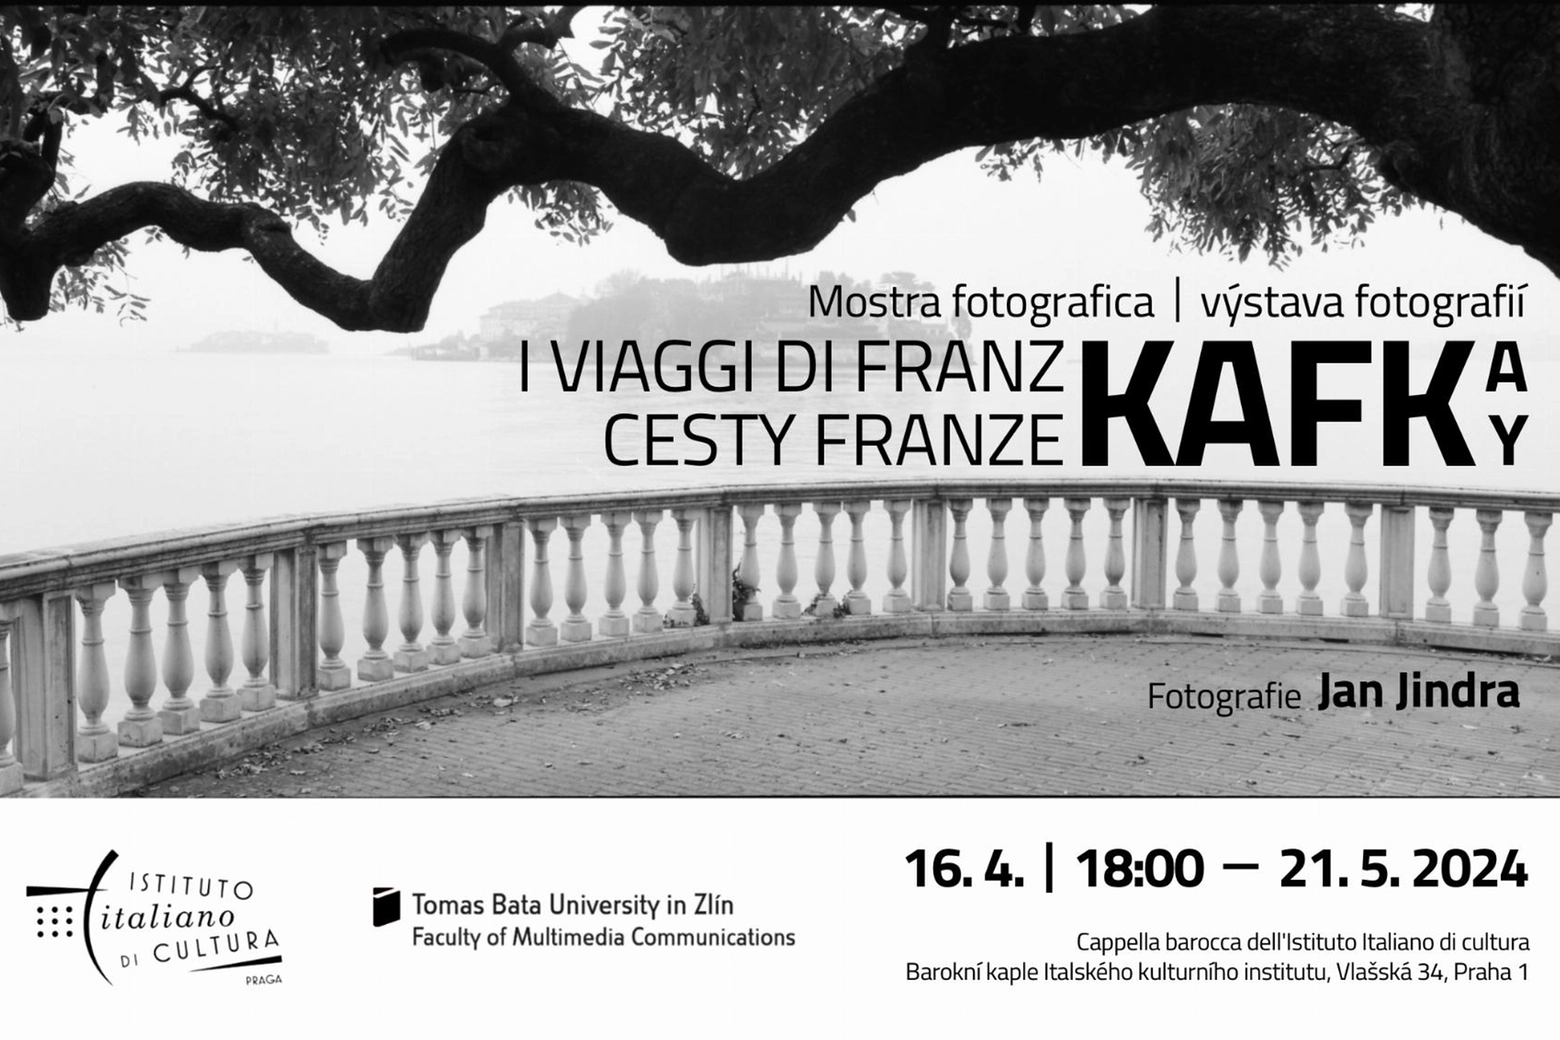 La locandina della mostra in corso a Praga e dedicata ai viaggi di Franz Kafka, tra cui i 4 che fece in Italia